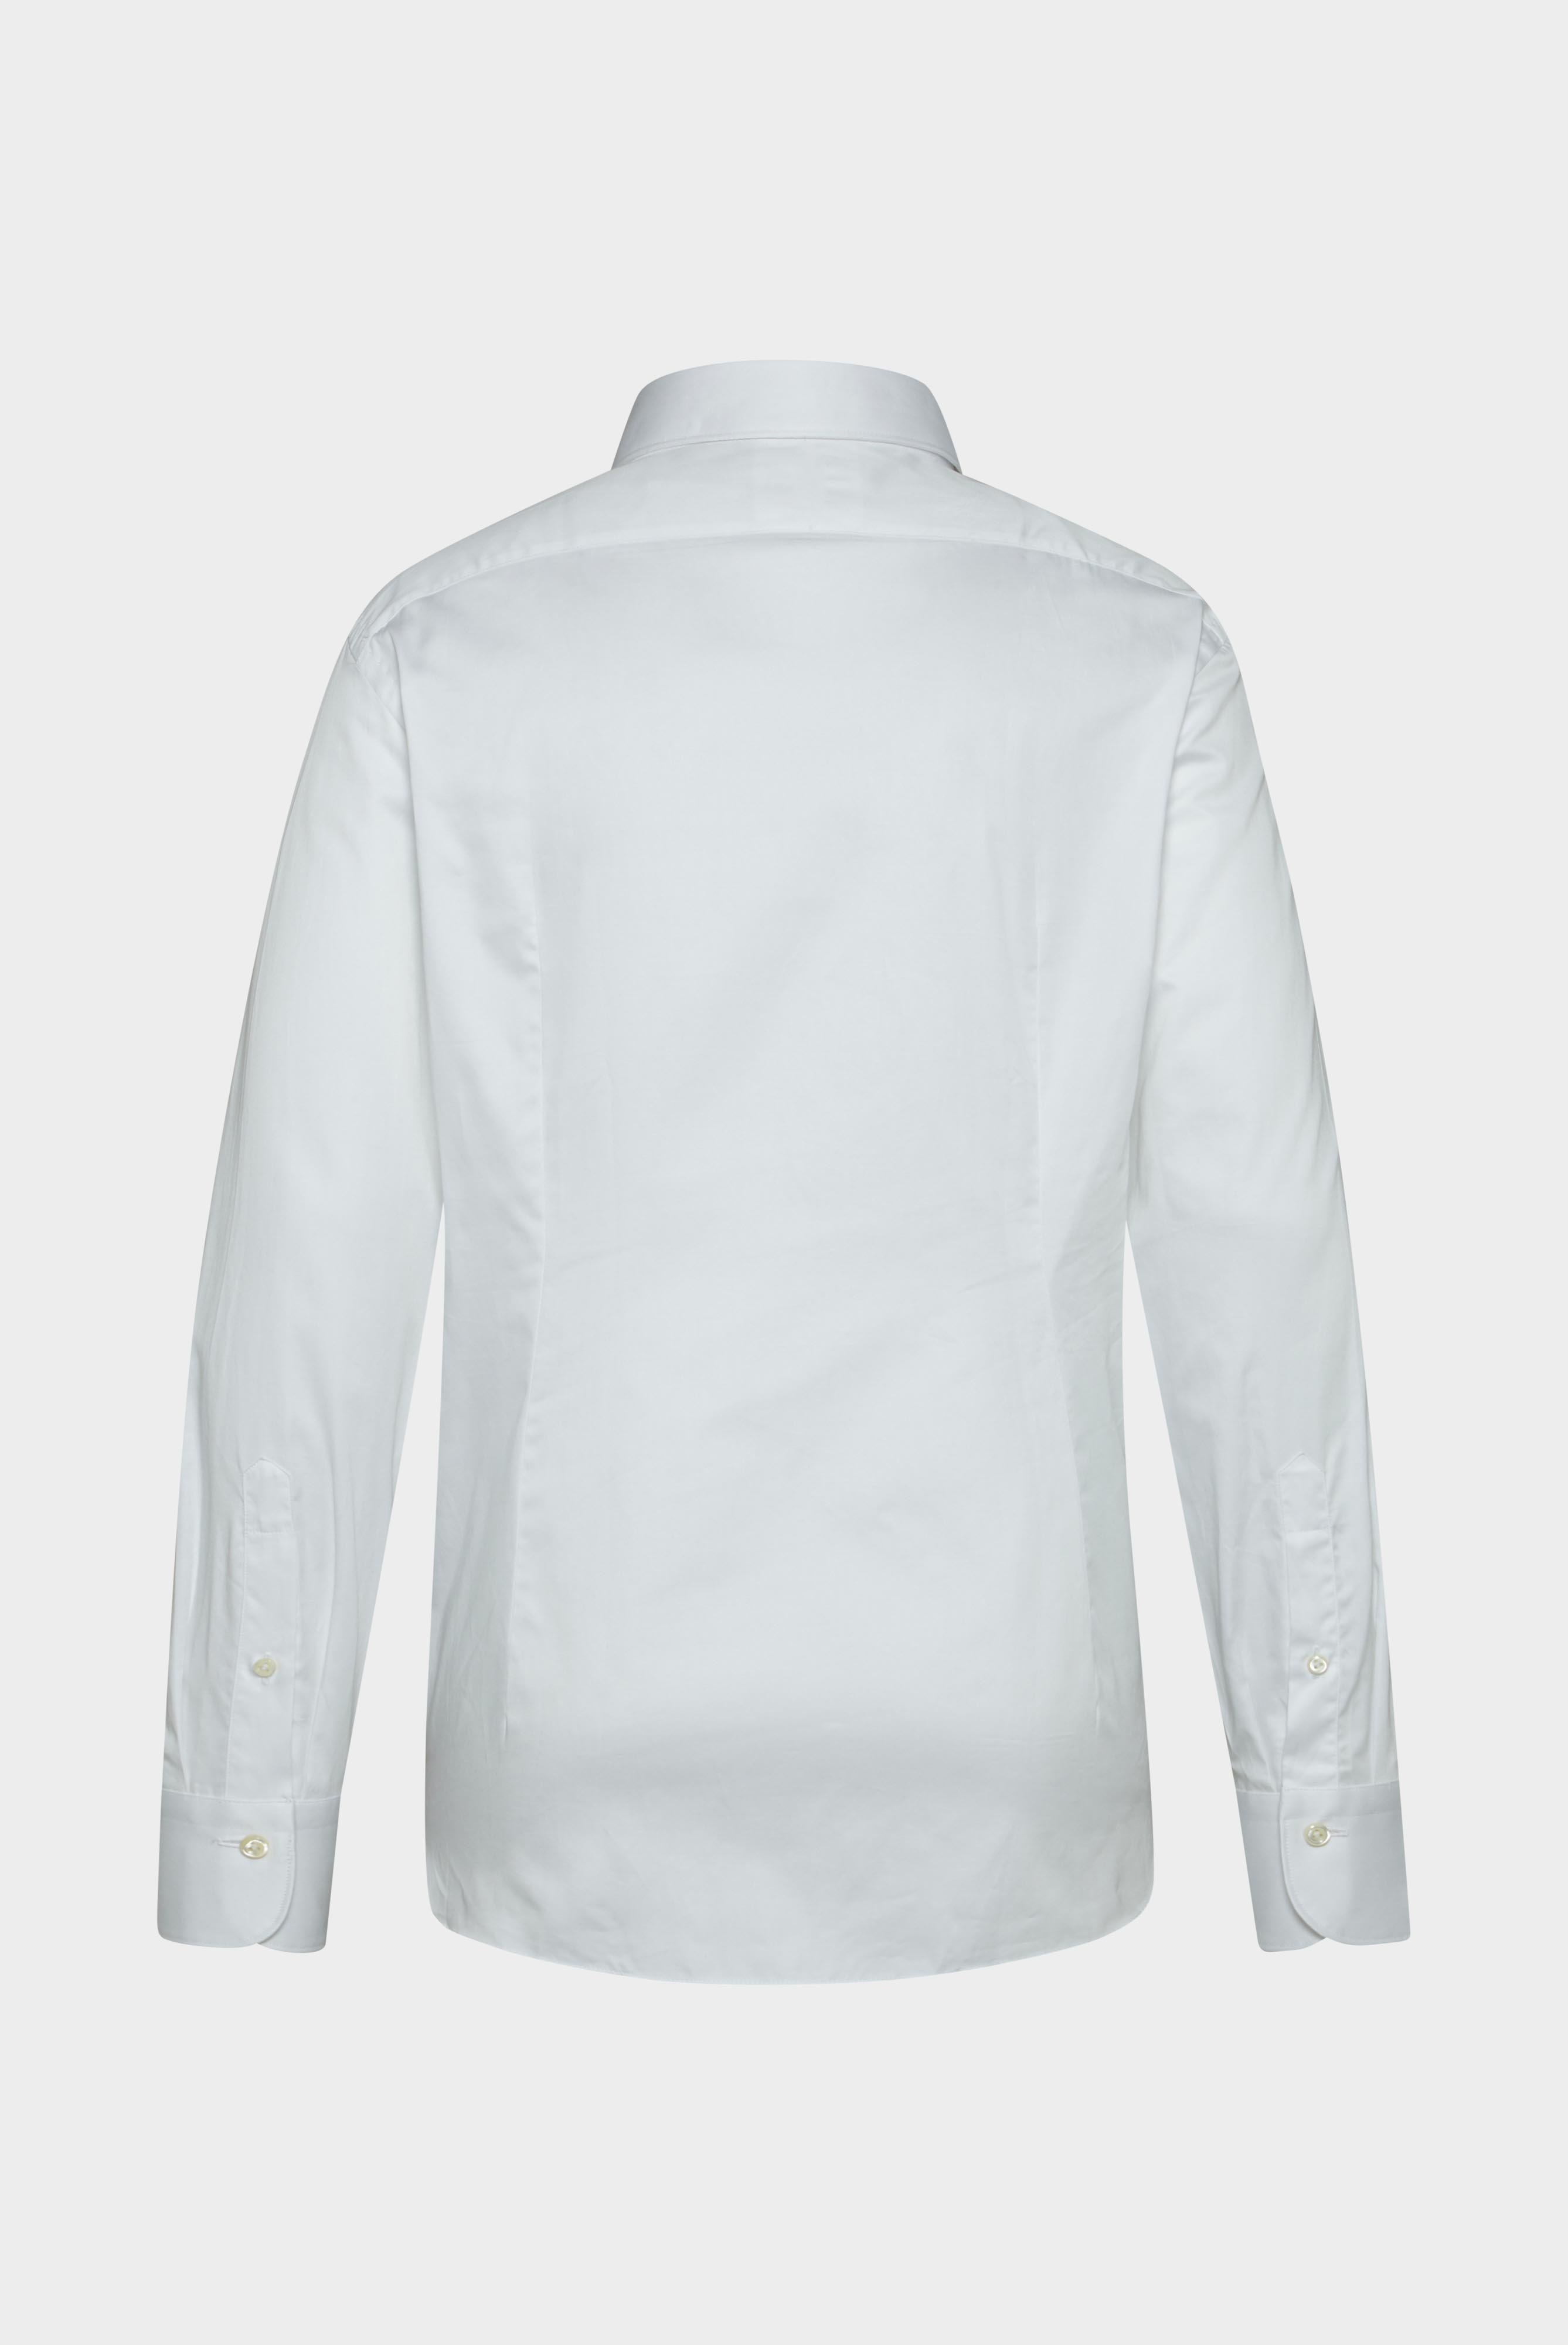 Meisterwerk Shirts+Structured Cotton Shirt+20.2502.NV.130972.000.38